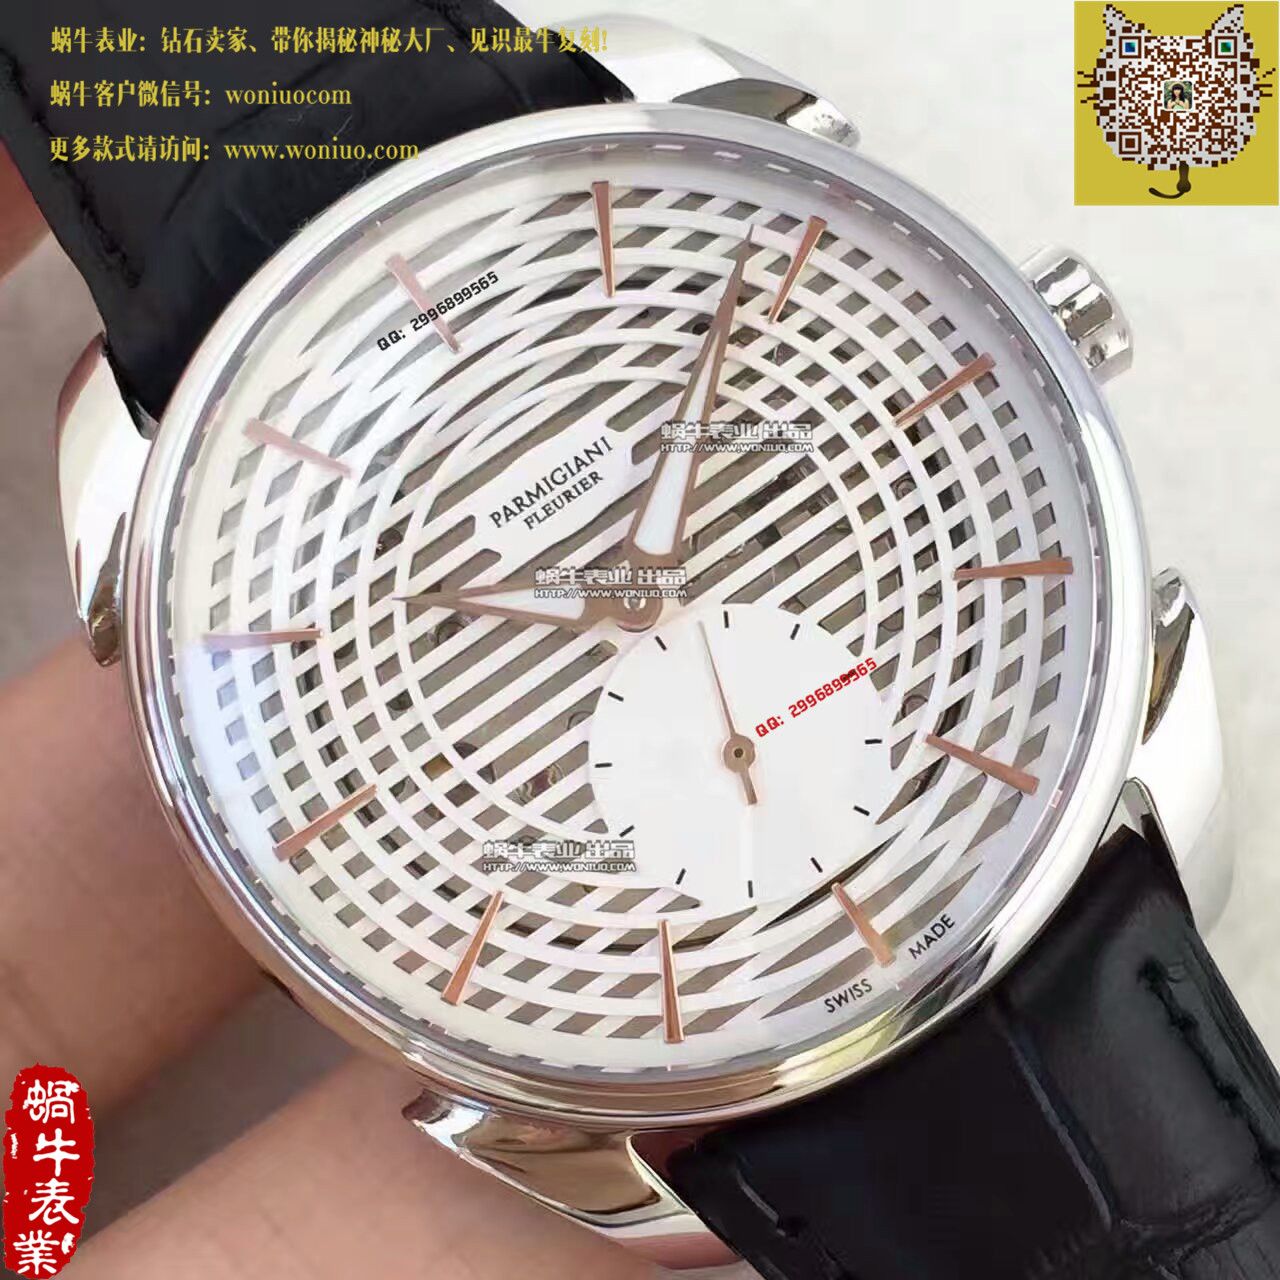 【1:1超A复刻手表】帕玛强尼Tonda系列Tonda 1950腕表 / PM023